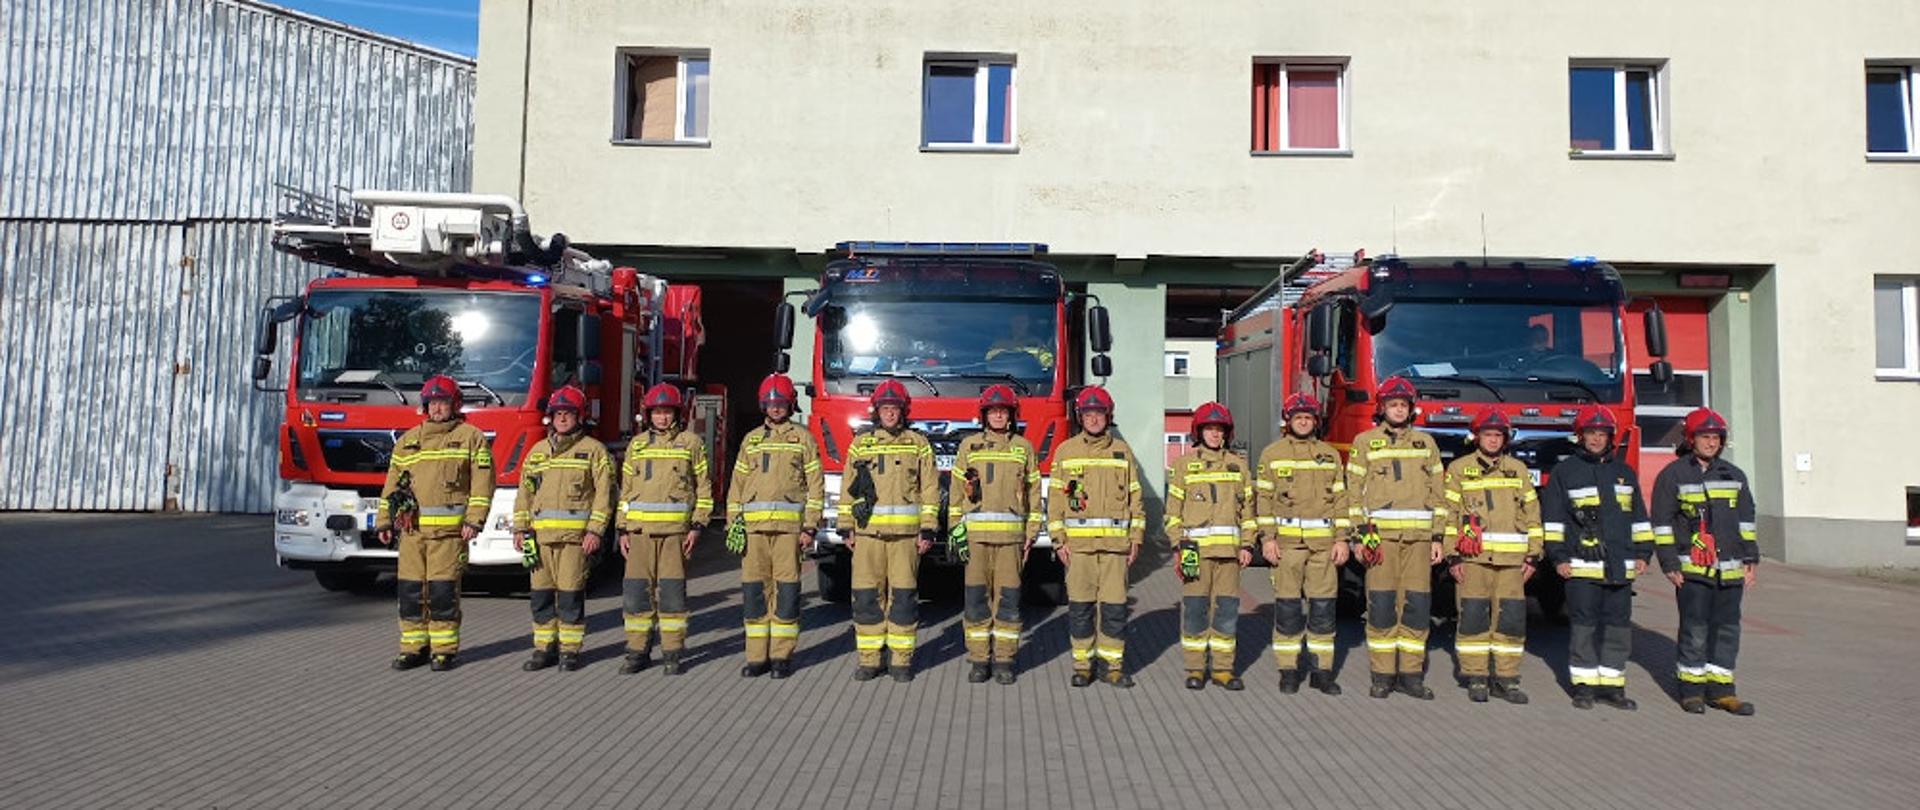 strażacy z Komendy Powiatowej Państwowej Straży Pożarnej w Szczecinku oraz druhowie OSP z powiatu szczecineckiego oddali hołd strażakowi, który zginął 6 sierpnia 2022 roku w wypadku podczas służby